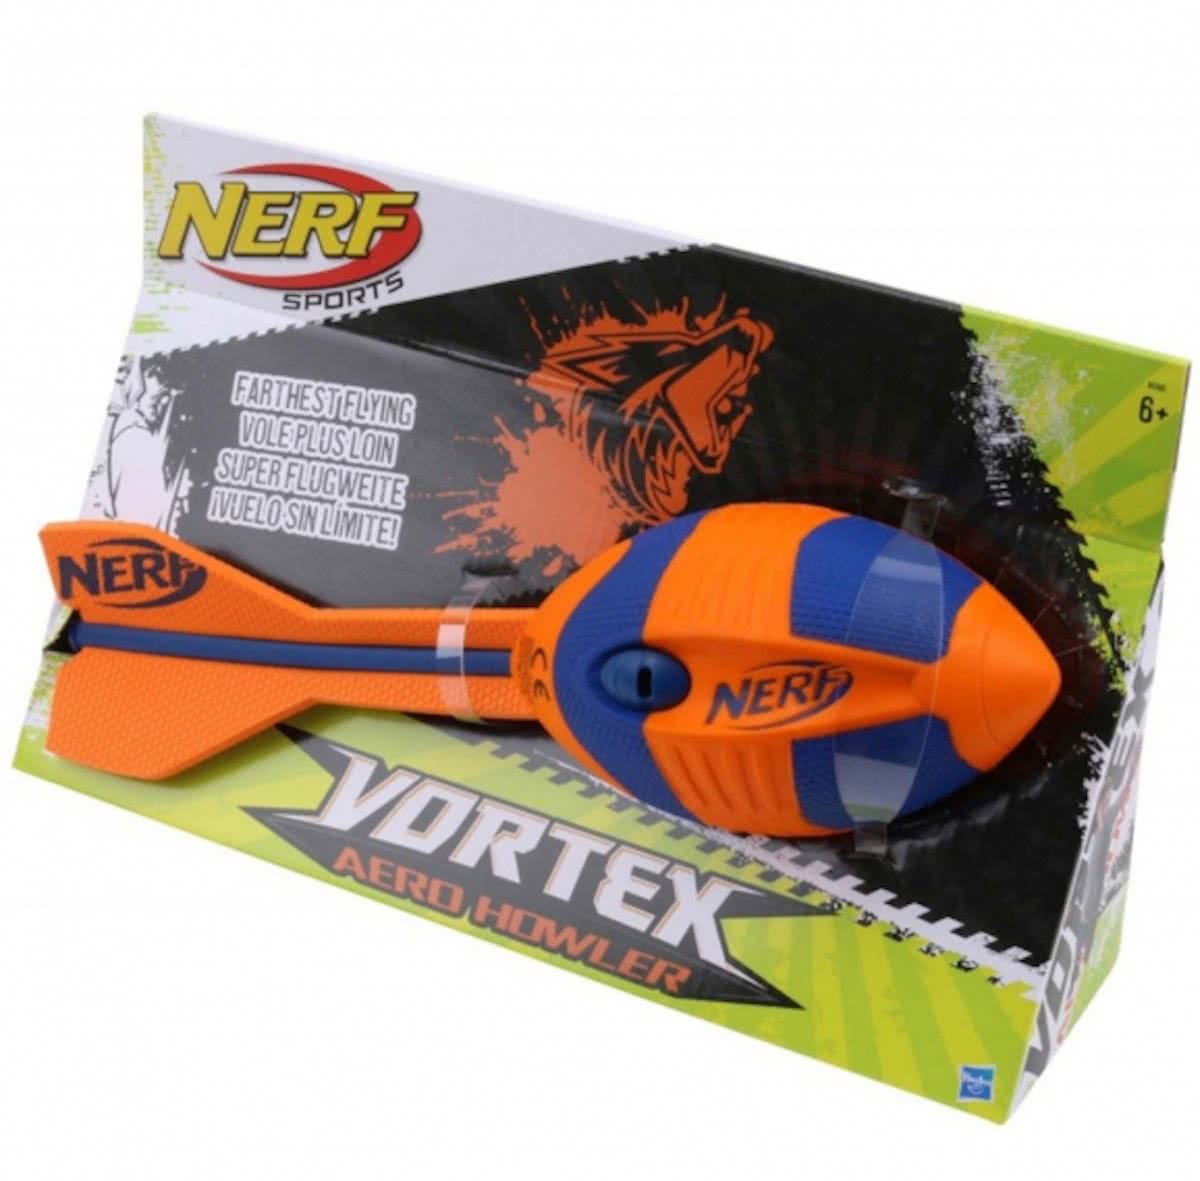 Ontwijken Kleren ventilatie NERF Sports Vortex Aero Howler - Werpbal kopen